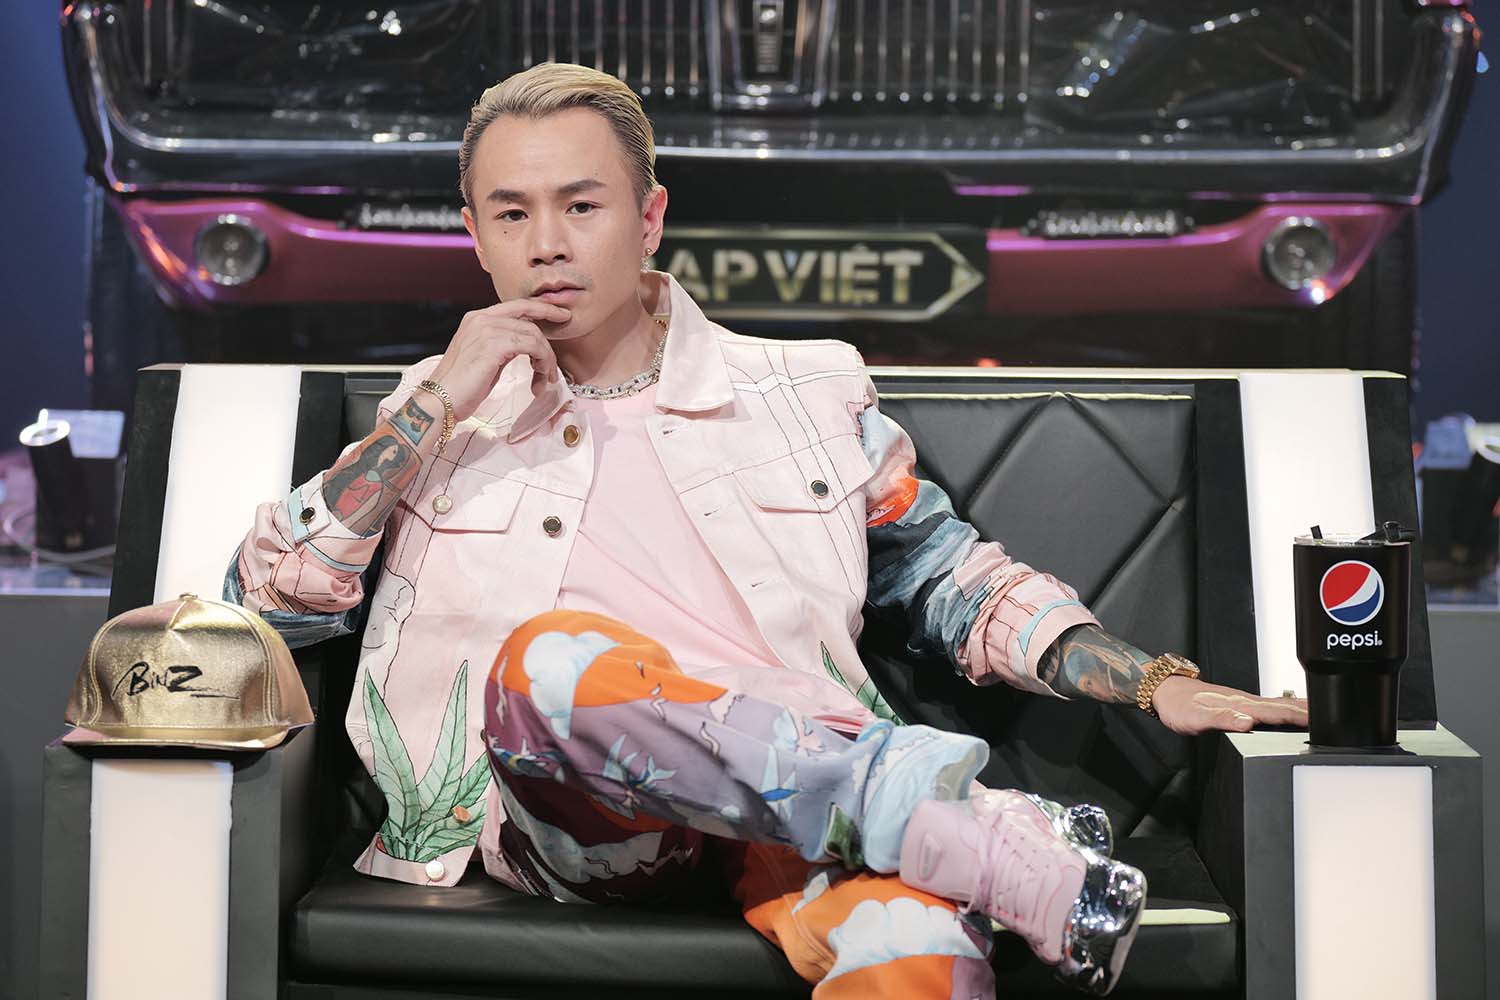 Nam rapper Binz gây ấn tượng với set đồ màu hồng cùng họa tiết bắt mắt tại chương trình RAP Việt khá hot hiện nay